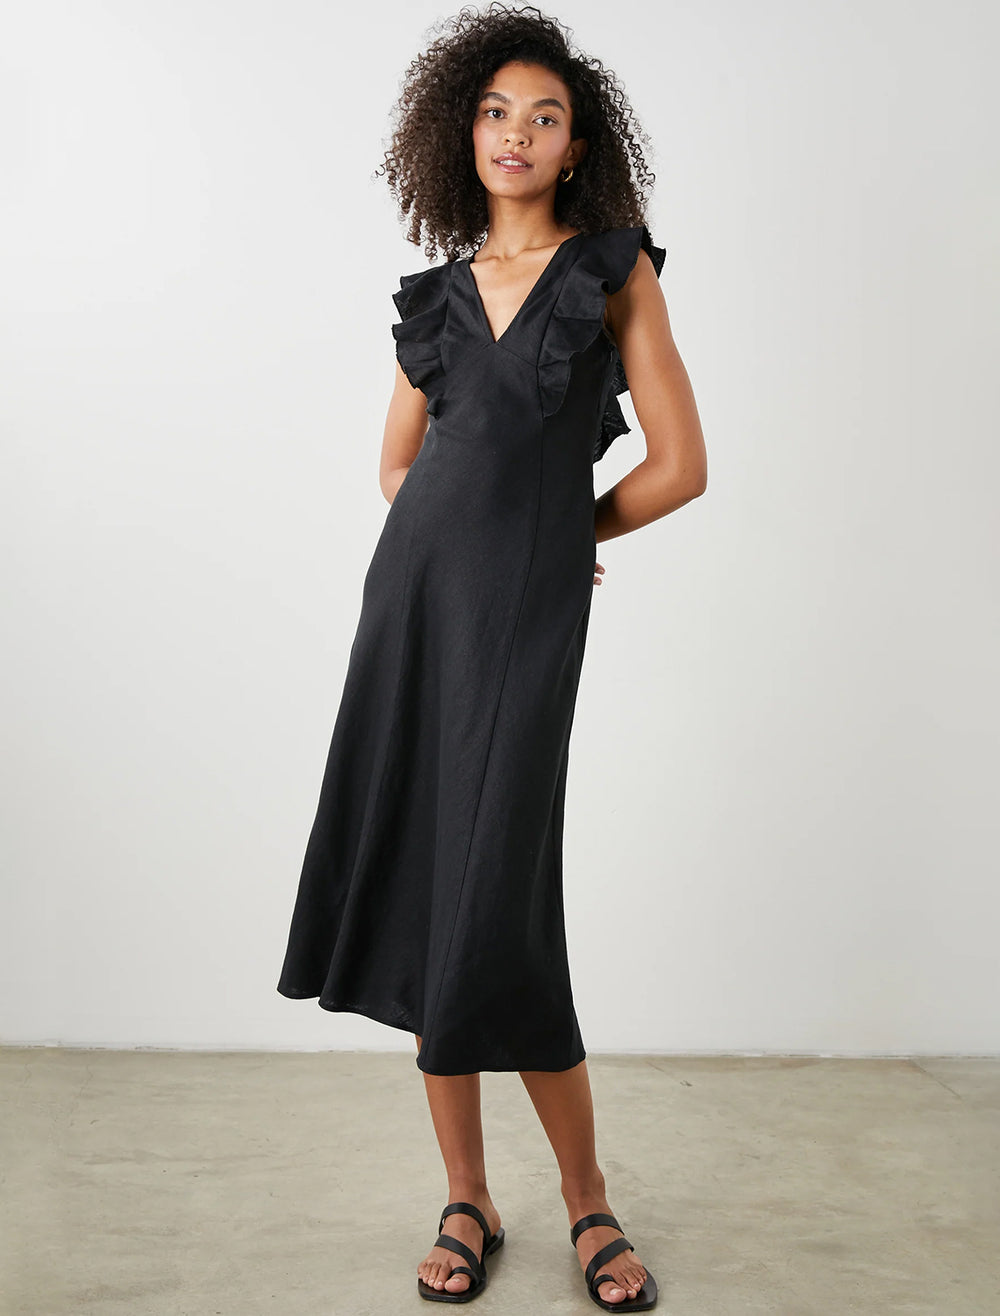 Model wearing Rails' constance dress in black.